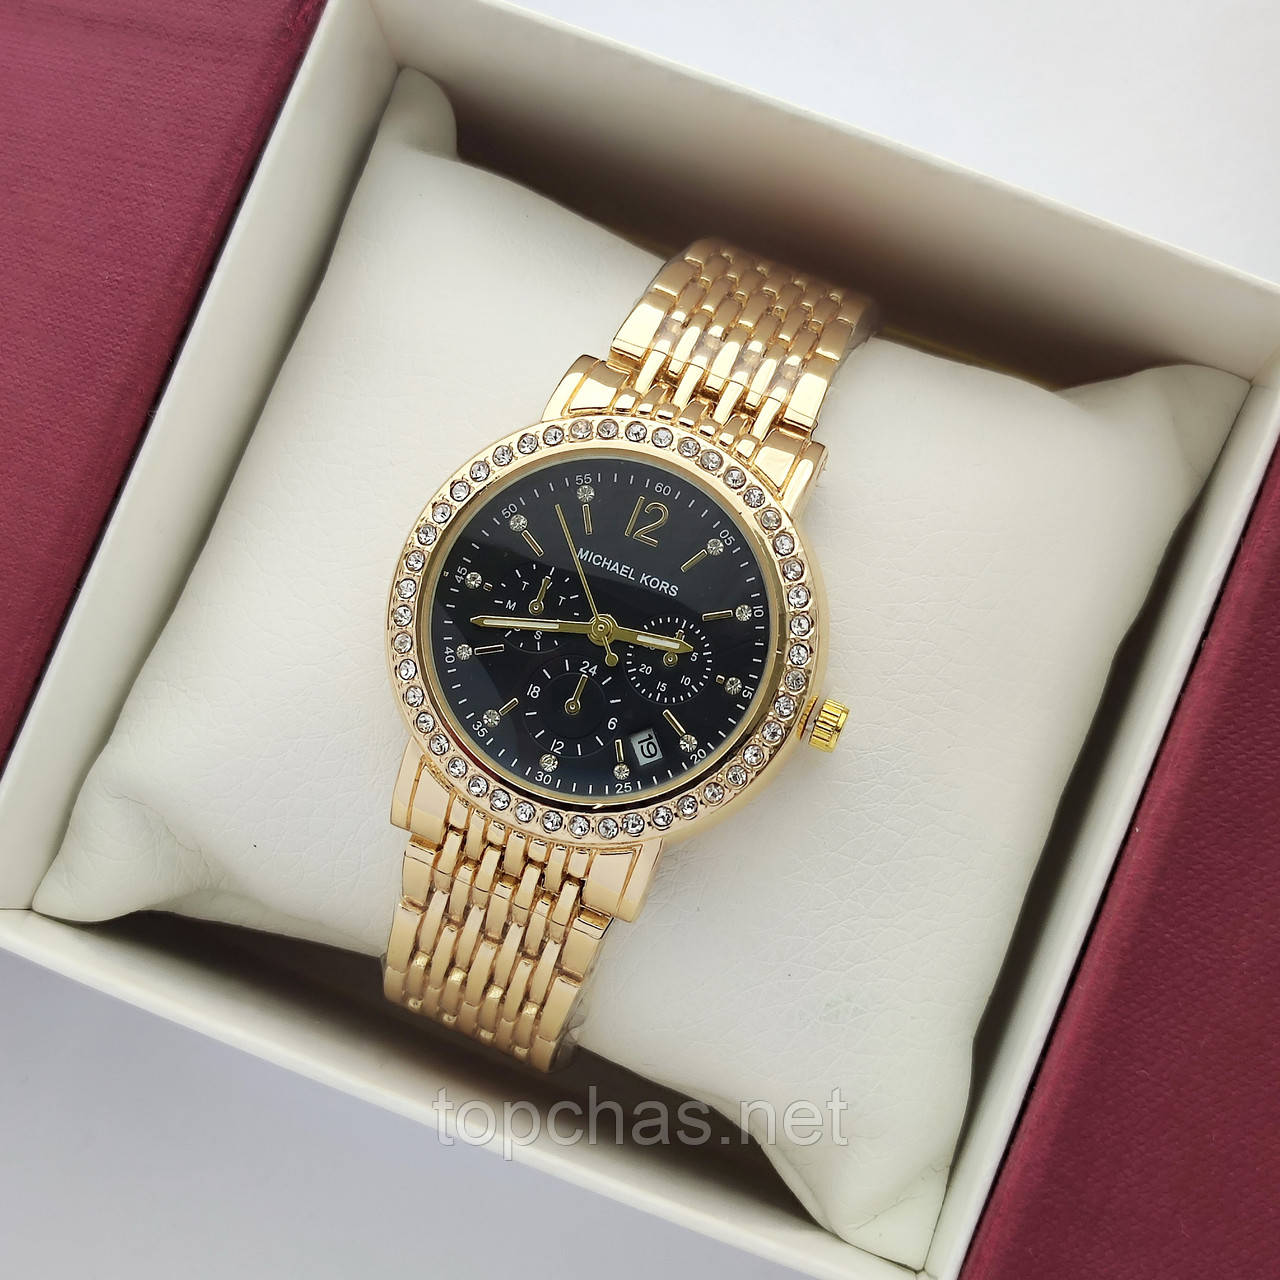 Невеликий жіночий наручний годинник Michael Kors (майкл корс) золотий з чорним циферблатом, камінчики - код 2381b